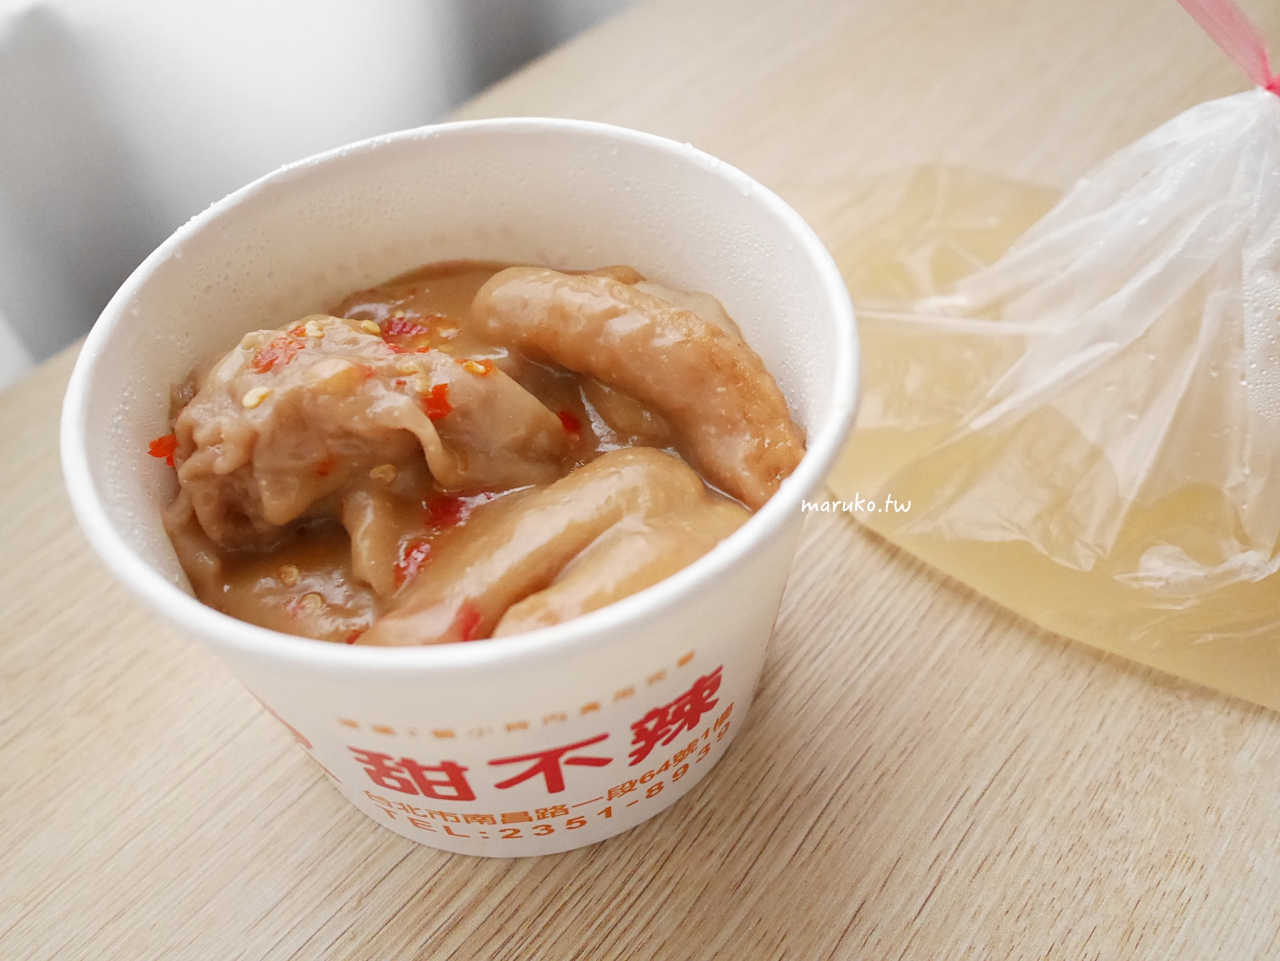 【食譜】奶油蜂蜜炸雞 甜甜蜂蜜炸雞 不辣的韓式炸雞做法 氣炸鍋食譜 @Maruko與美食有個約會